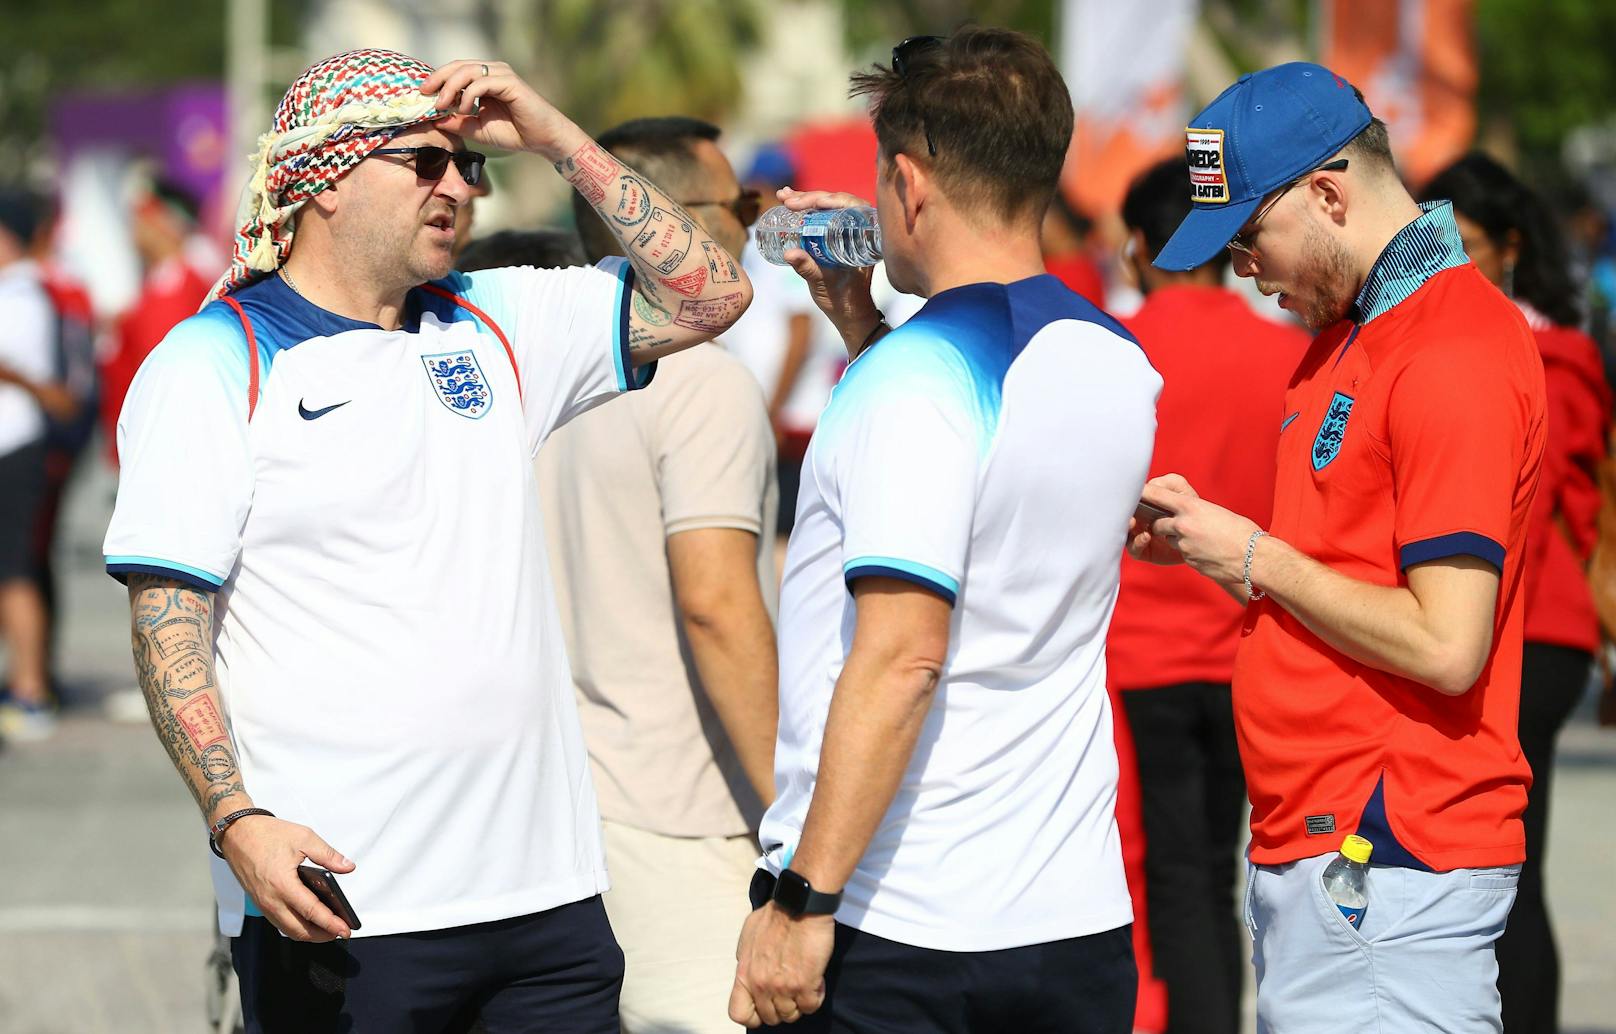 England-Fans auf der abenteuerlichen Bier-Suche